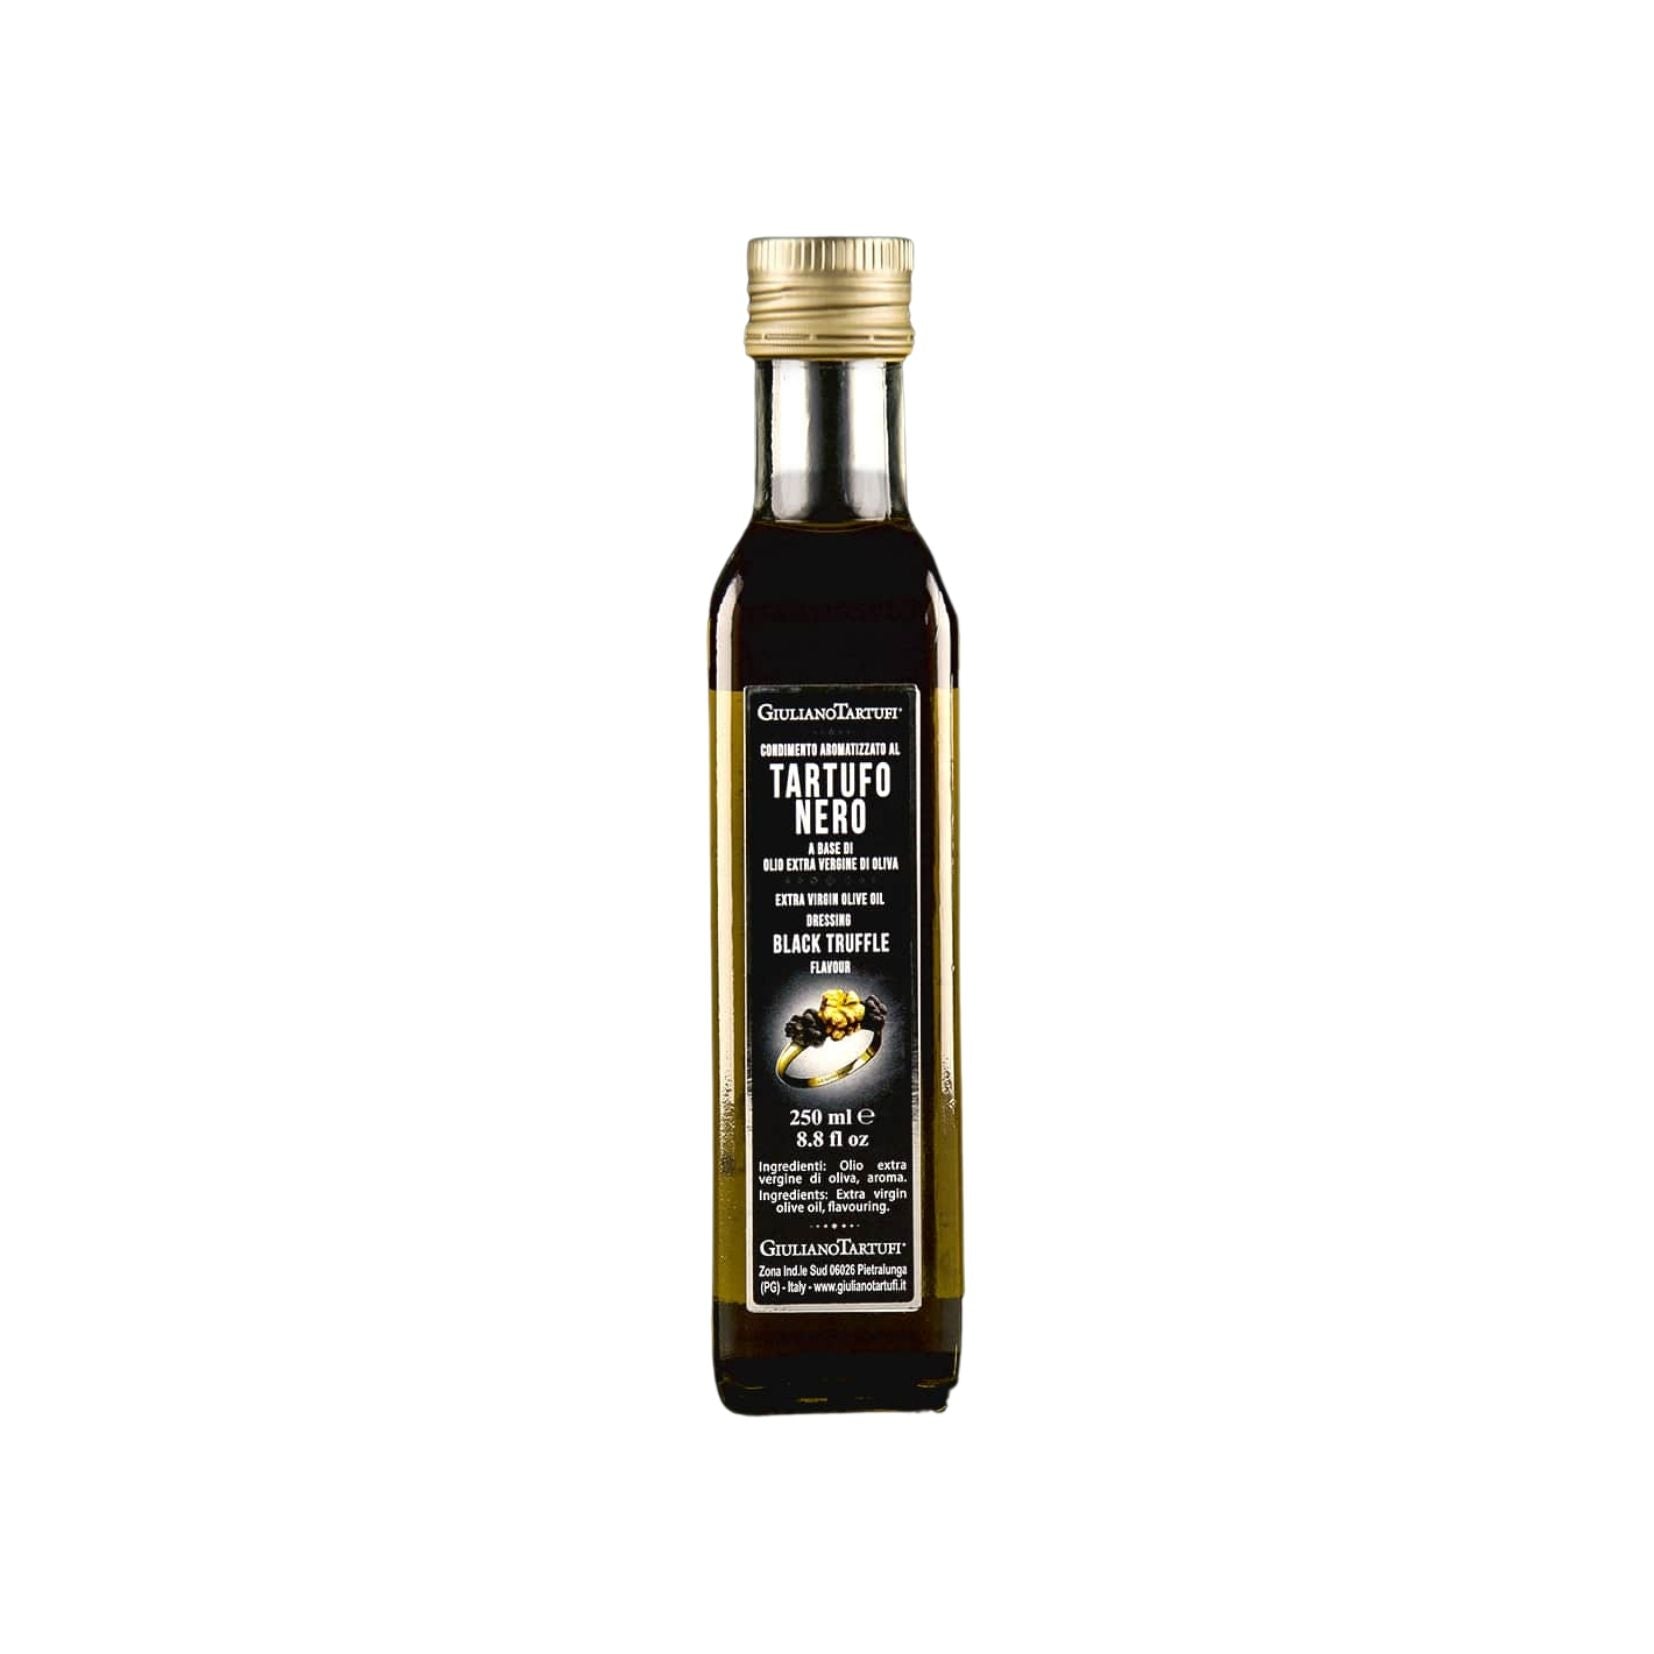 Huile d'Olive Extra Vierge avec arôme naturel et lamelles de truffe